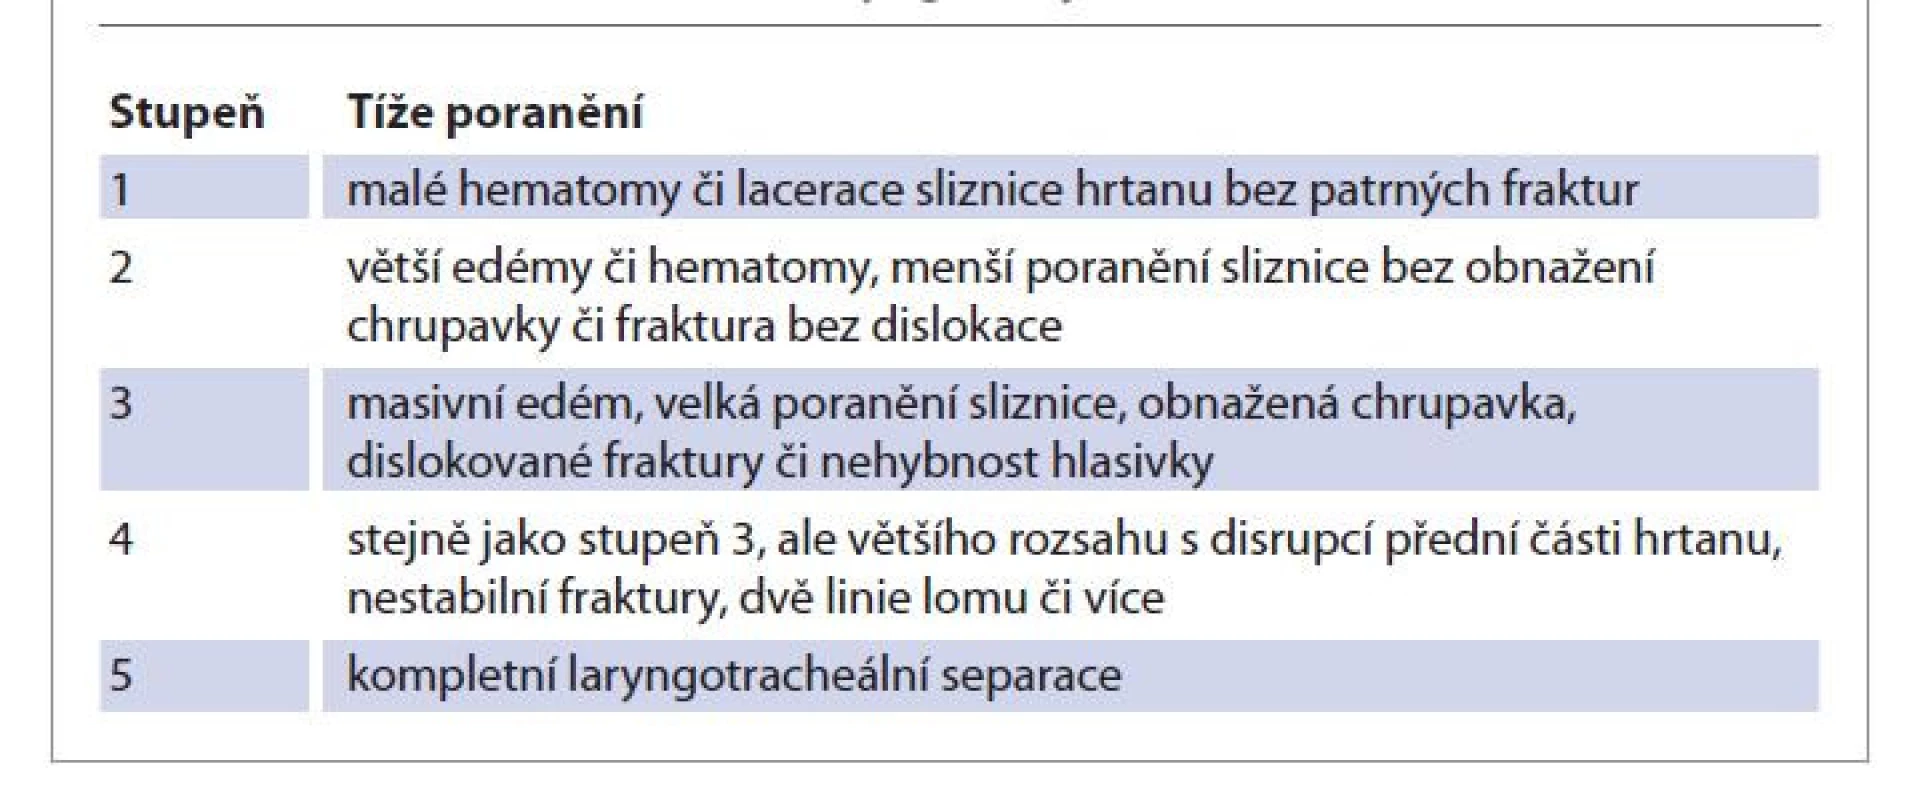 Klasifikace poranění hrtanu podle Schaefera, upraveno [4].<br>
Tab. 1. Schaefer classification of laryngeal injuries, modifi ed [4].